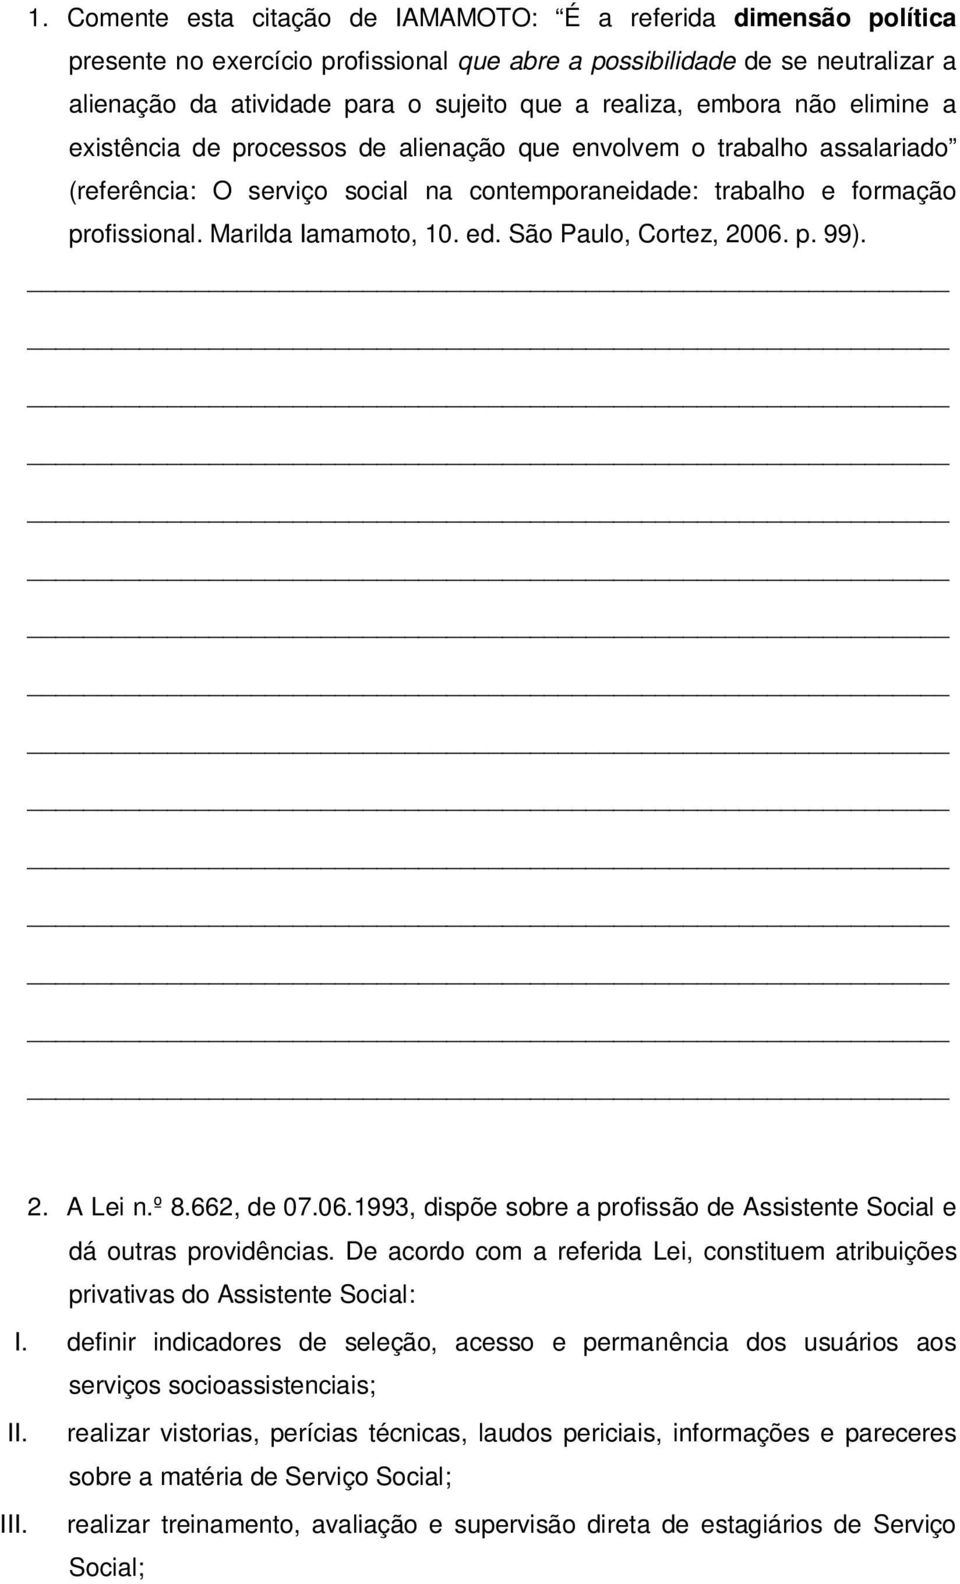 Marilda Iamamoto, 10. ed. São Paulo, Cortez, 2006. p. 99). 2. A Lei n.º 8.662, de 07.06.1993, dispõe sobre a profissão de Assistente Social e dá outras providências.